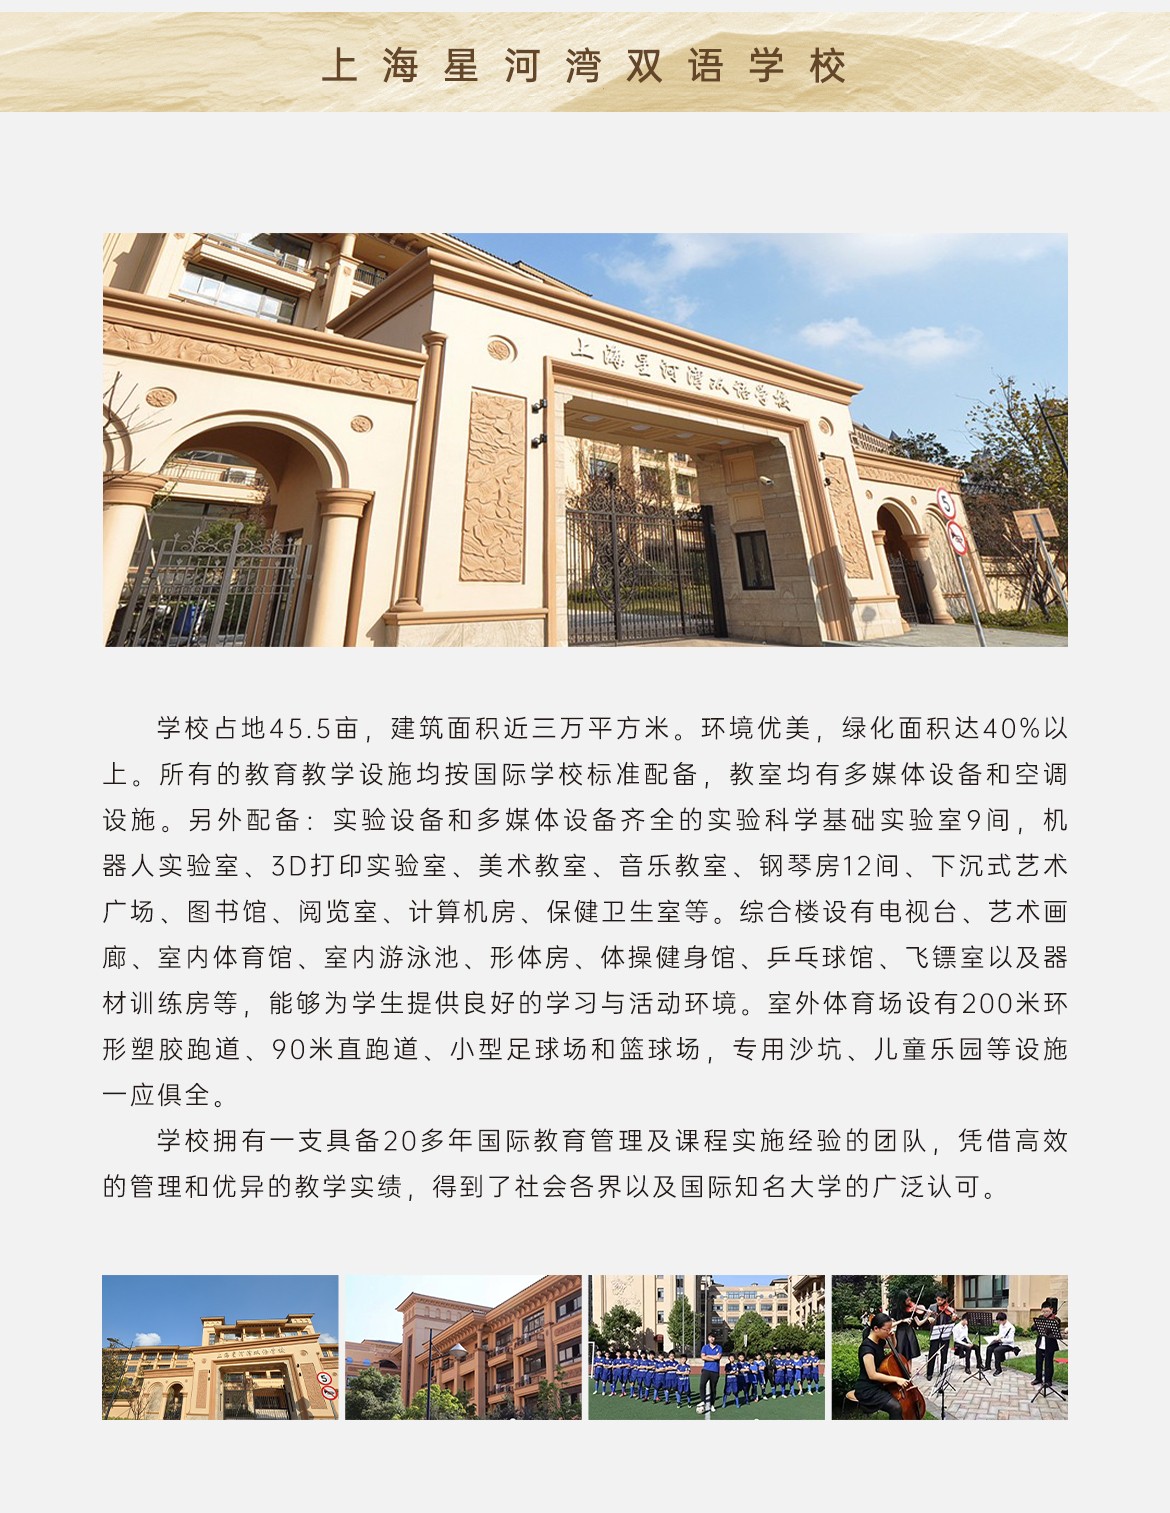 上海星河湾双语学校.jpg